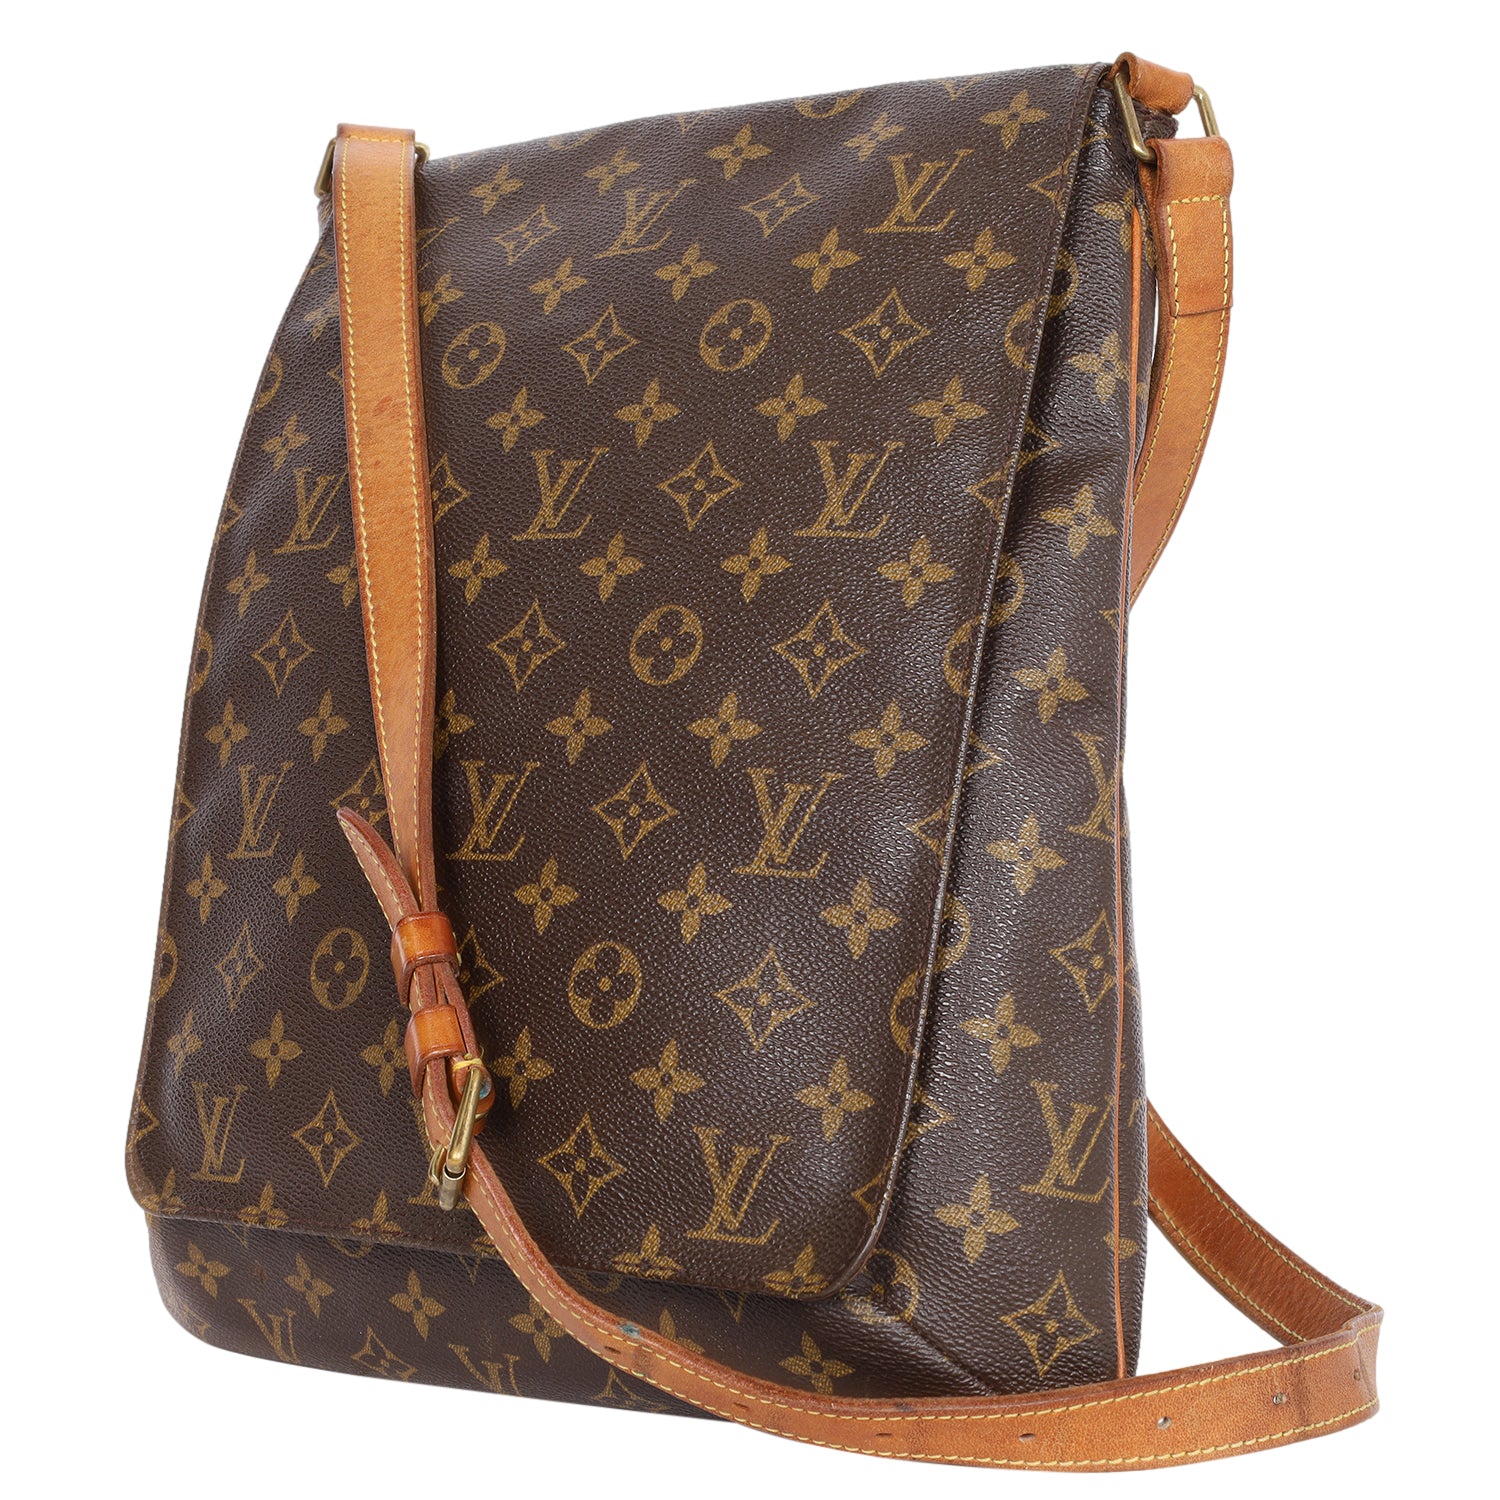 Louis Vuitton, Bags, Authentic Louis Vuitton Musette Gm Monogram  Crossbody